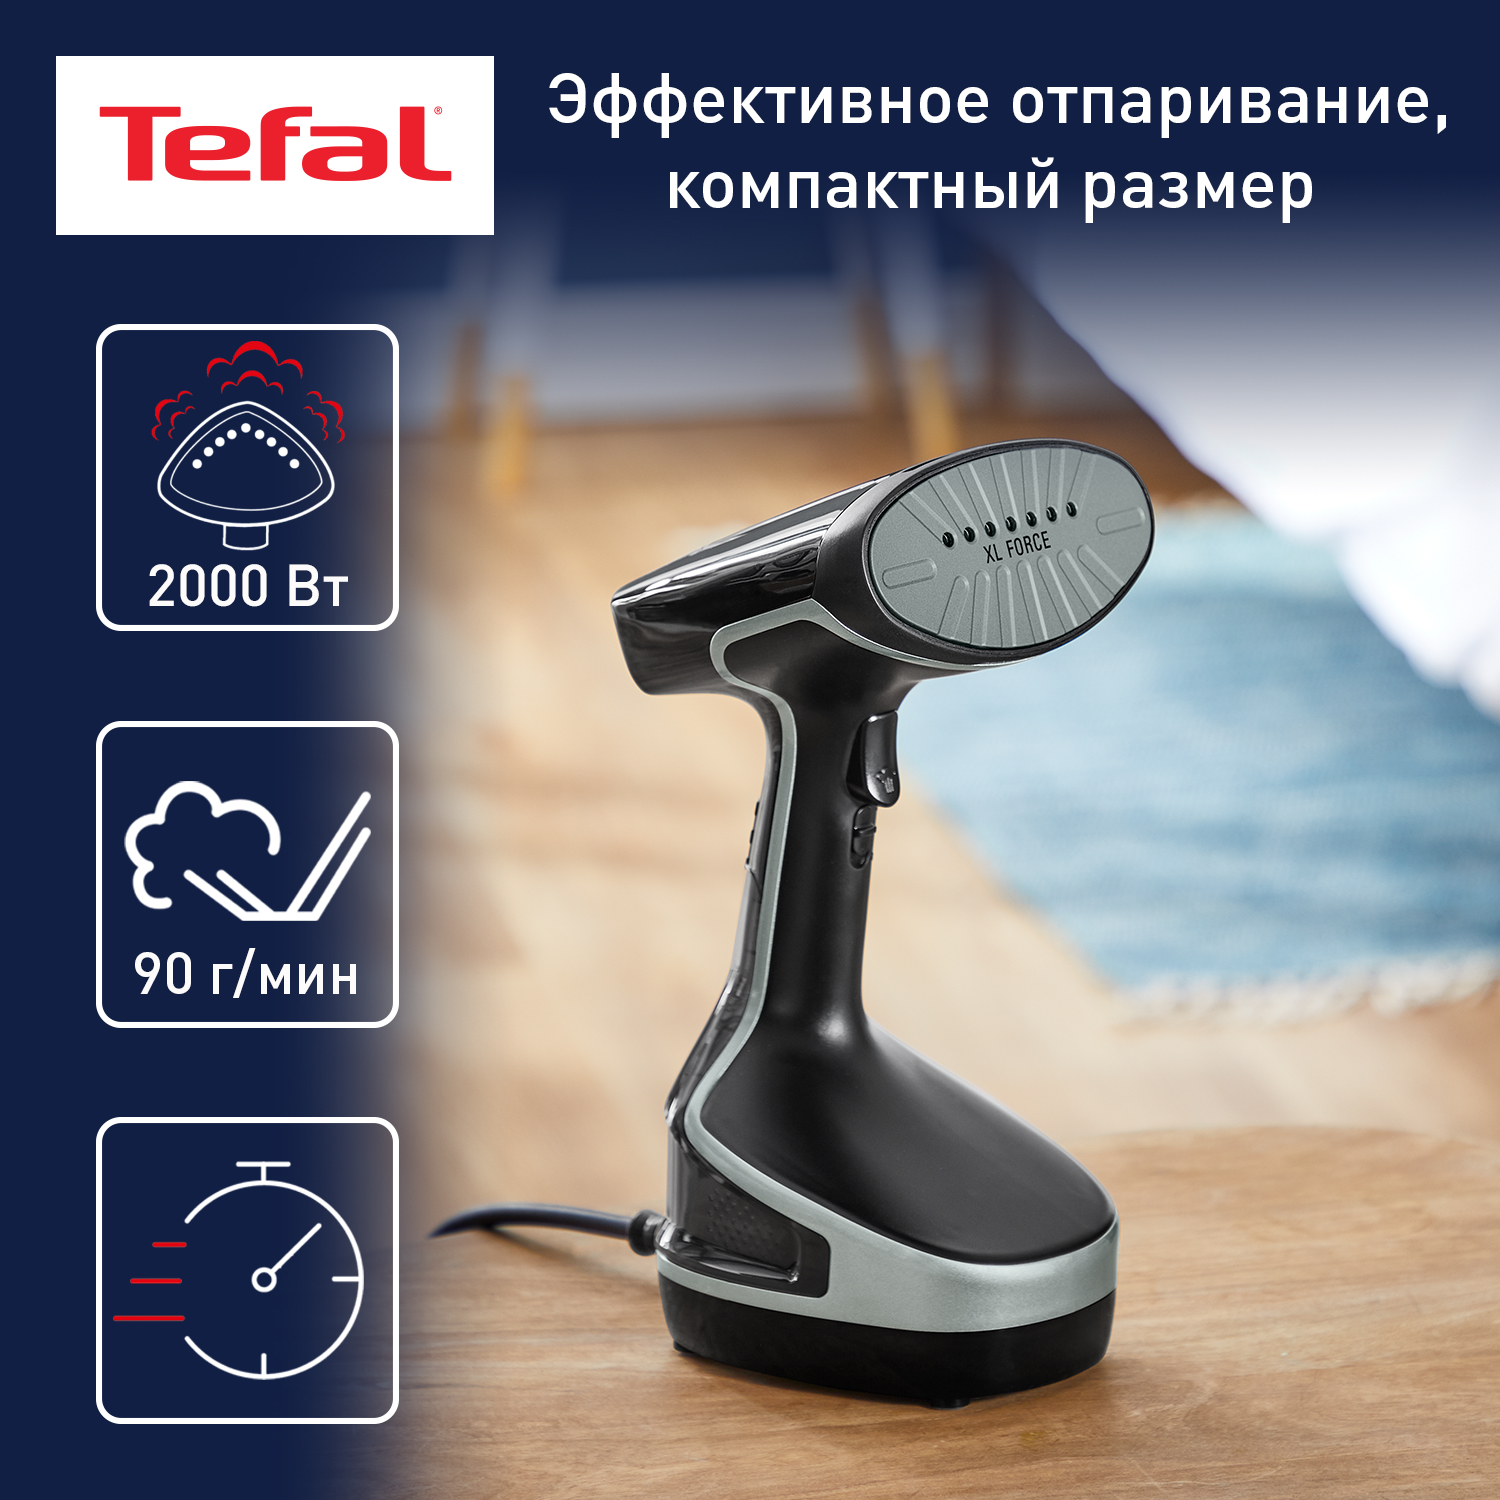 Ручной вертикальный отпариватель Tefal Access Steam Force DT8230E1, 0.2 л, черный/серый, купить в Москве, цены в интернет-магазинах на Мегамаркет